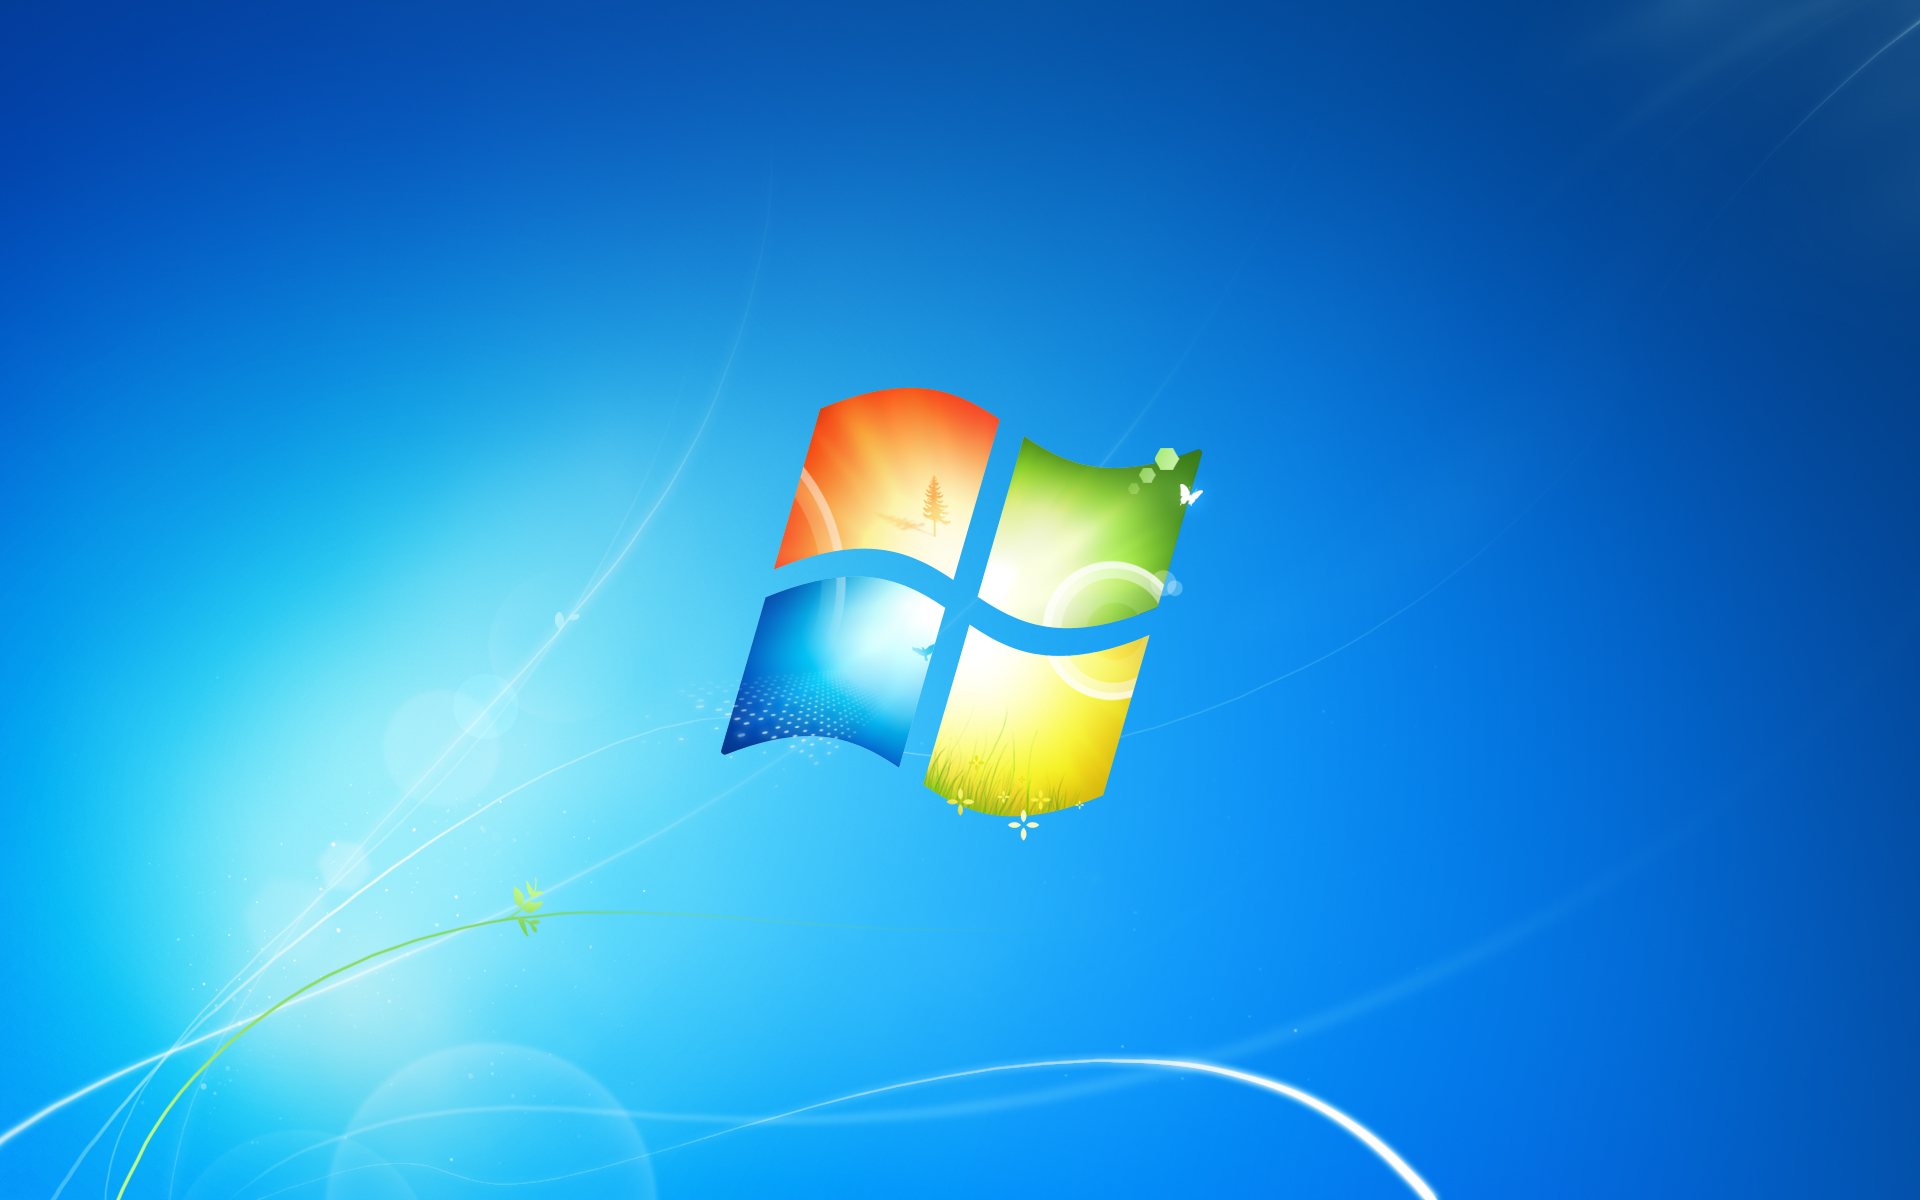 Wallpaper Windows XP day Microsoft 8K OS 23307